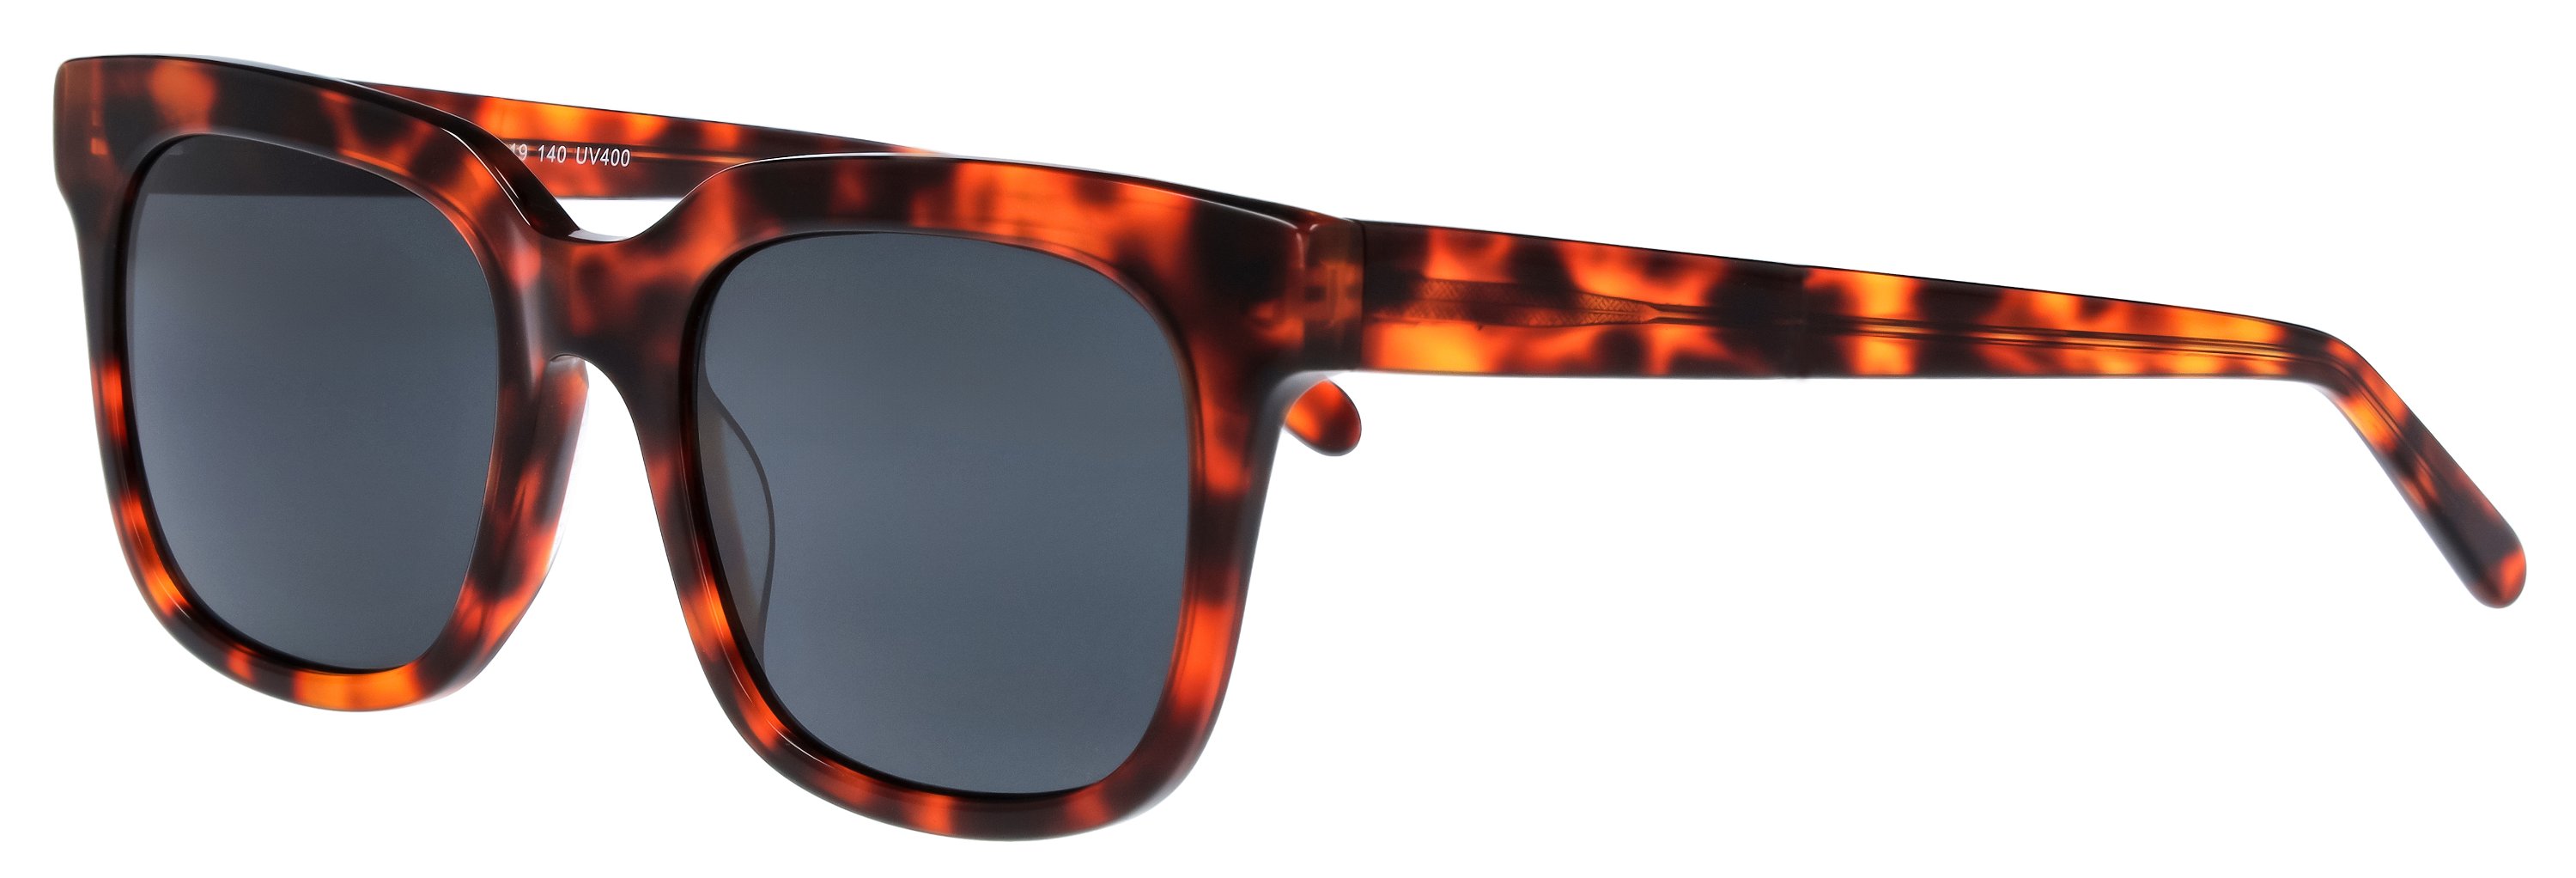 Das Bild zeigt die Sonnenbrille 141181 von der Marke Abele Optik in braun-orange havanna.